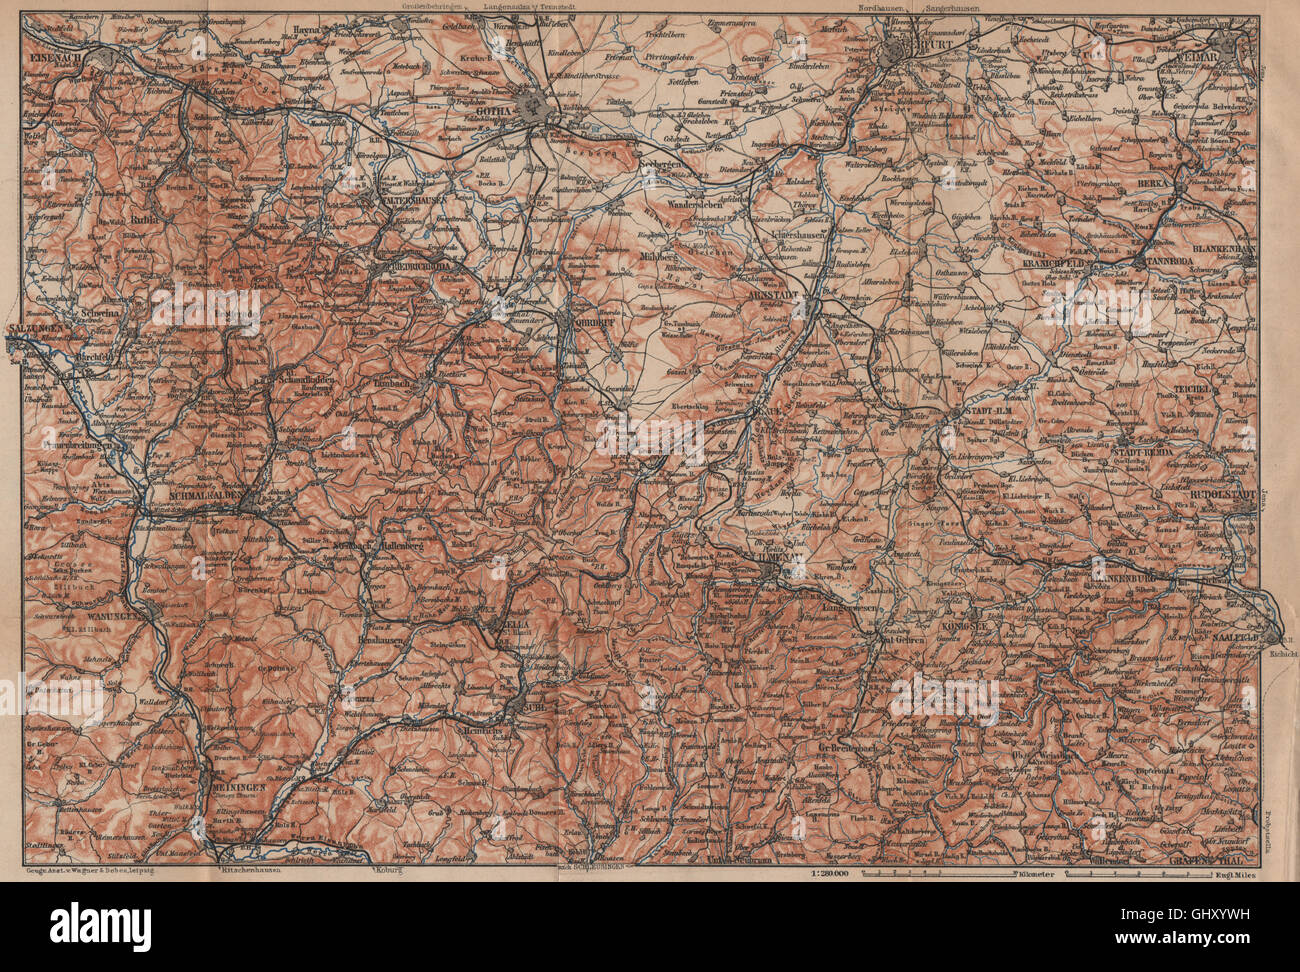 THÜRINGER Wald. Bosque de Turingia. Gotha Eisenach Erfurt Weimar karte, 1900 mapa Foto de stock